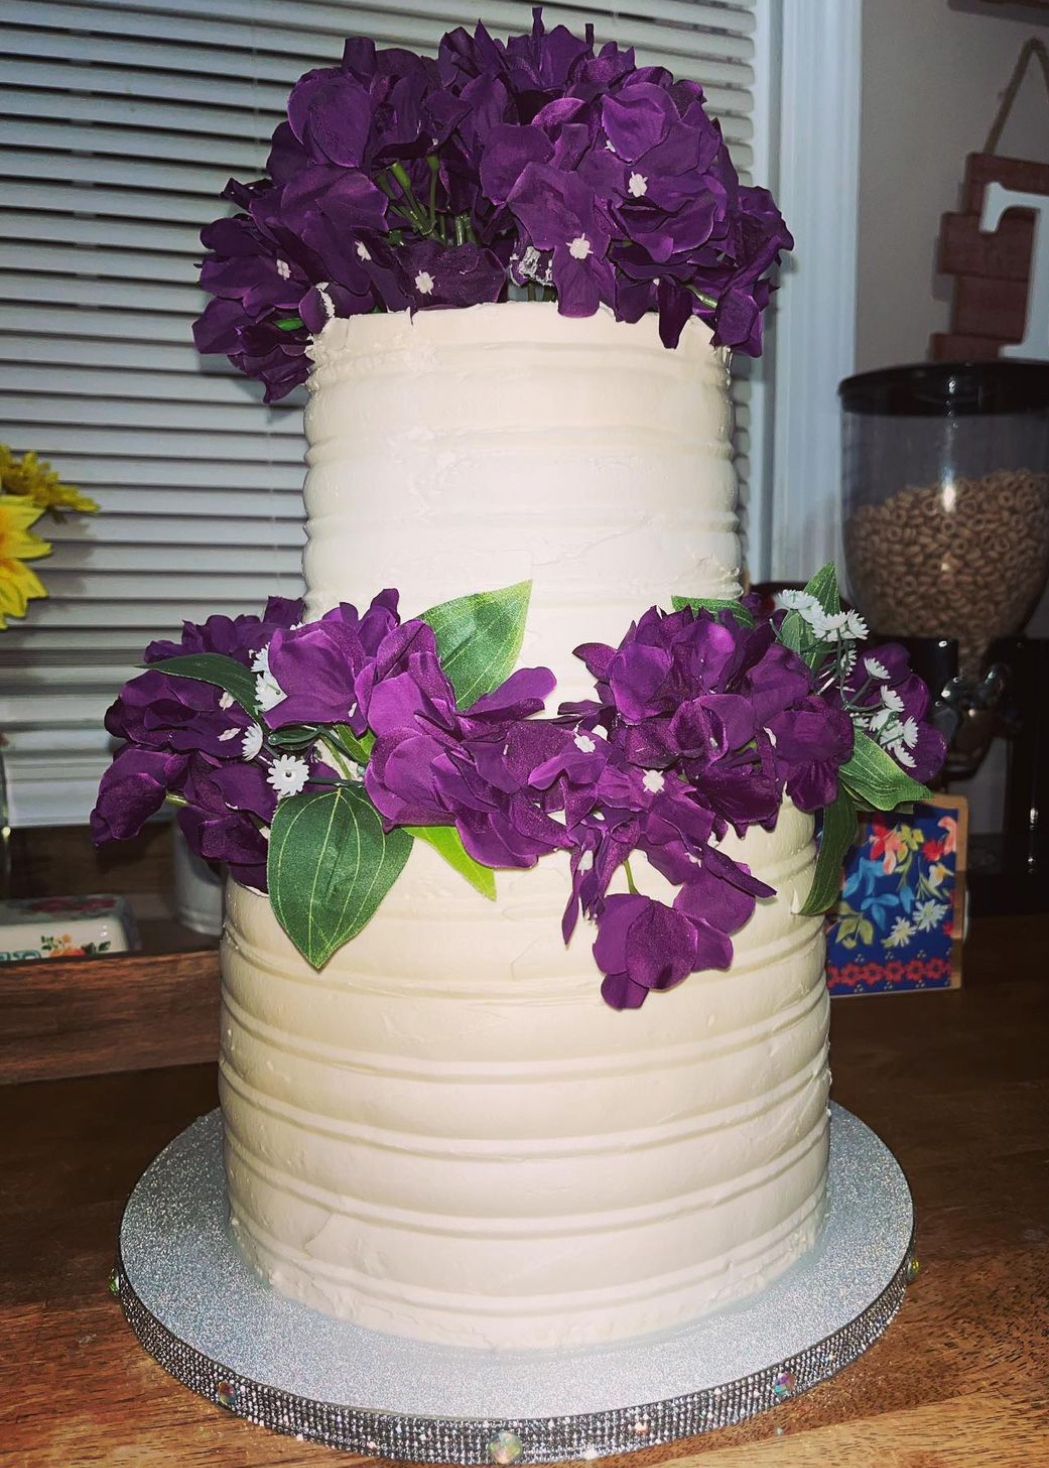 Tall white and purple cake